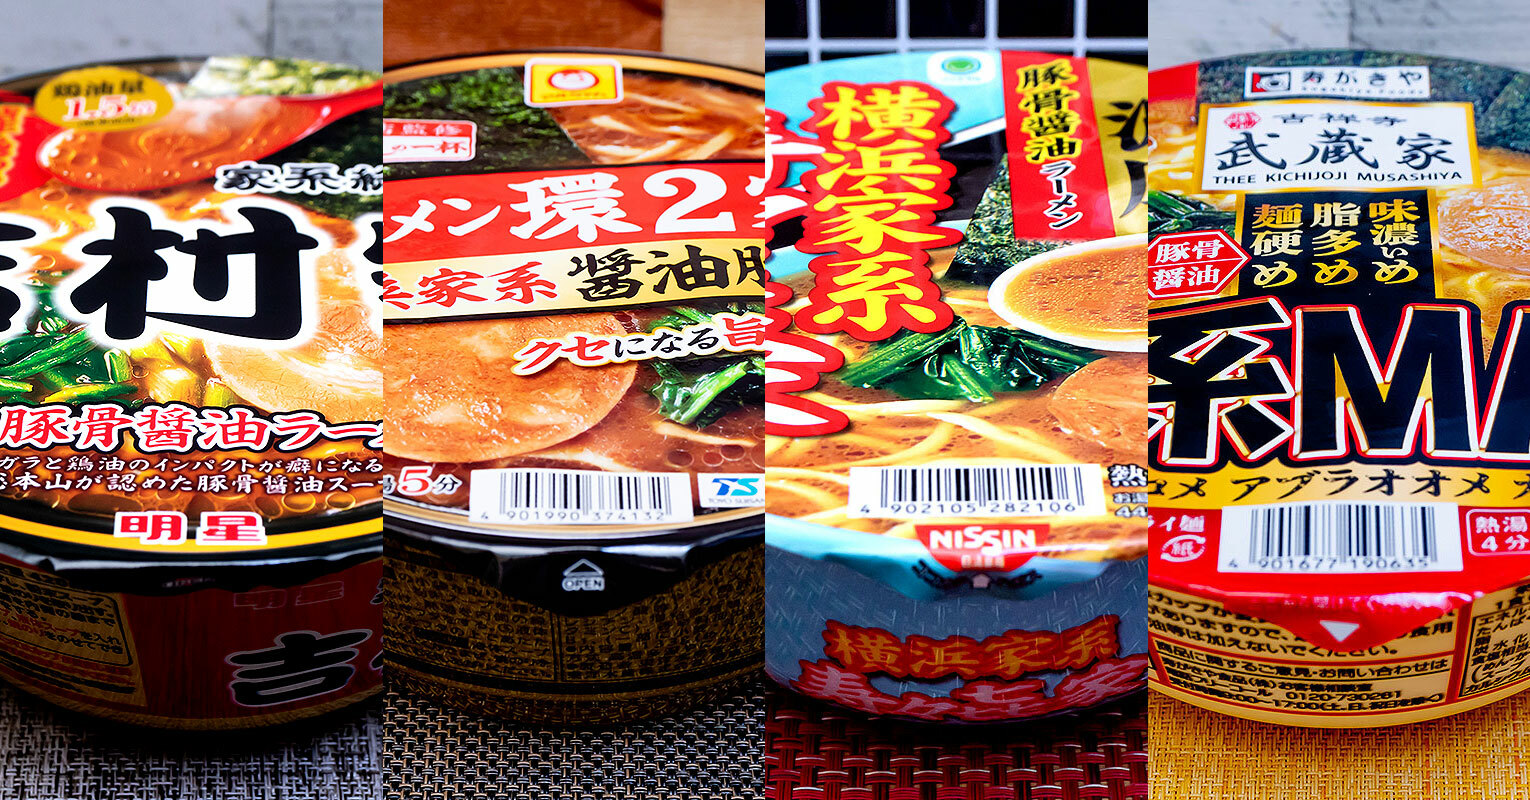 左から「吉村家」「環2家」「寿々喜家」「吉祥寺武蔵家」のカップ麺